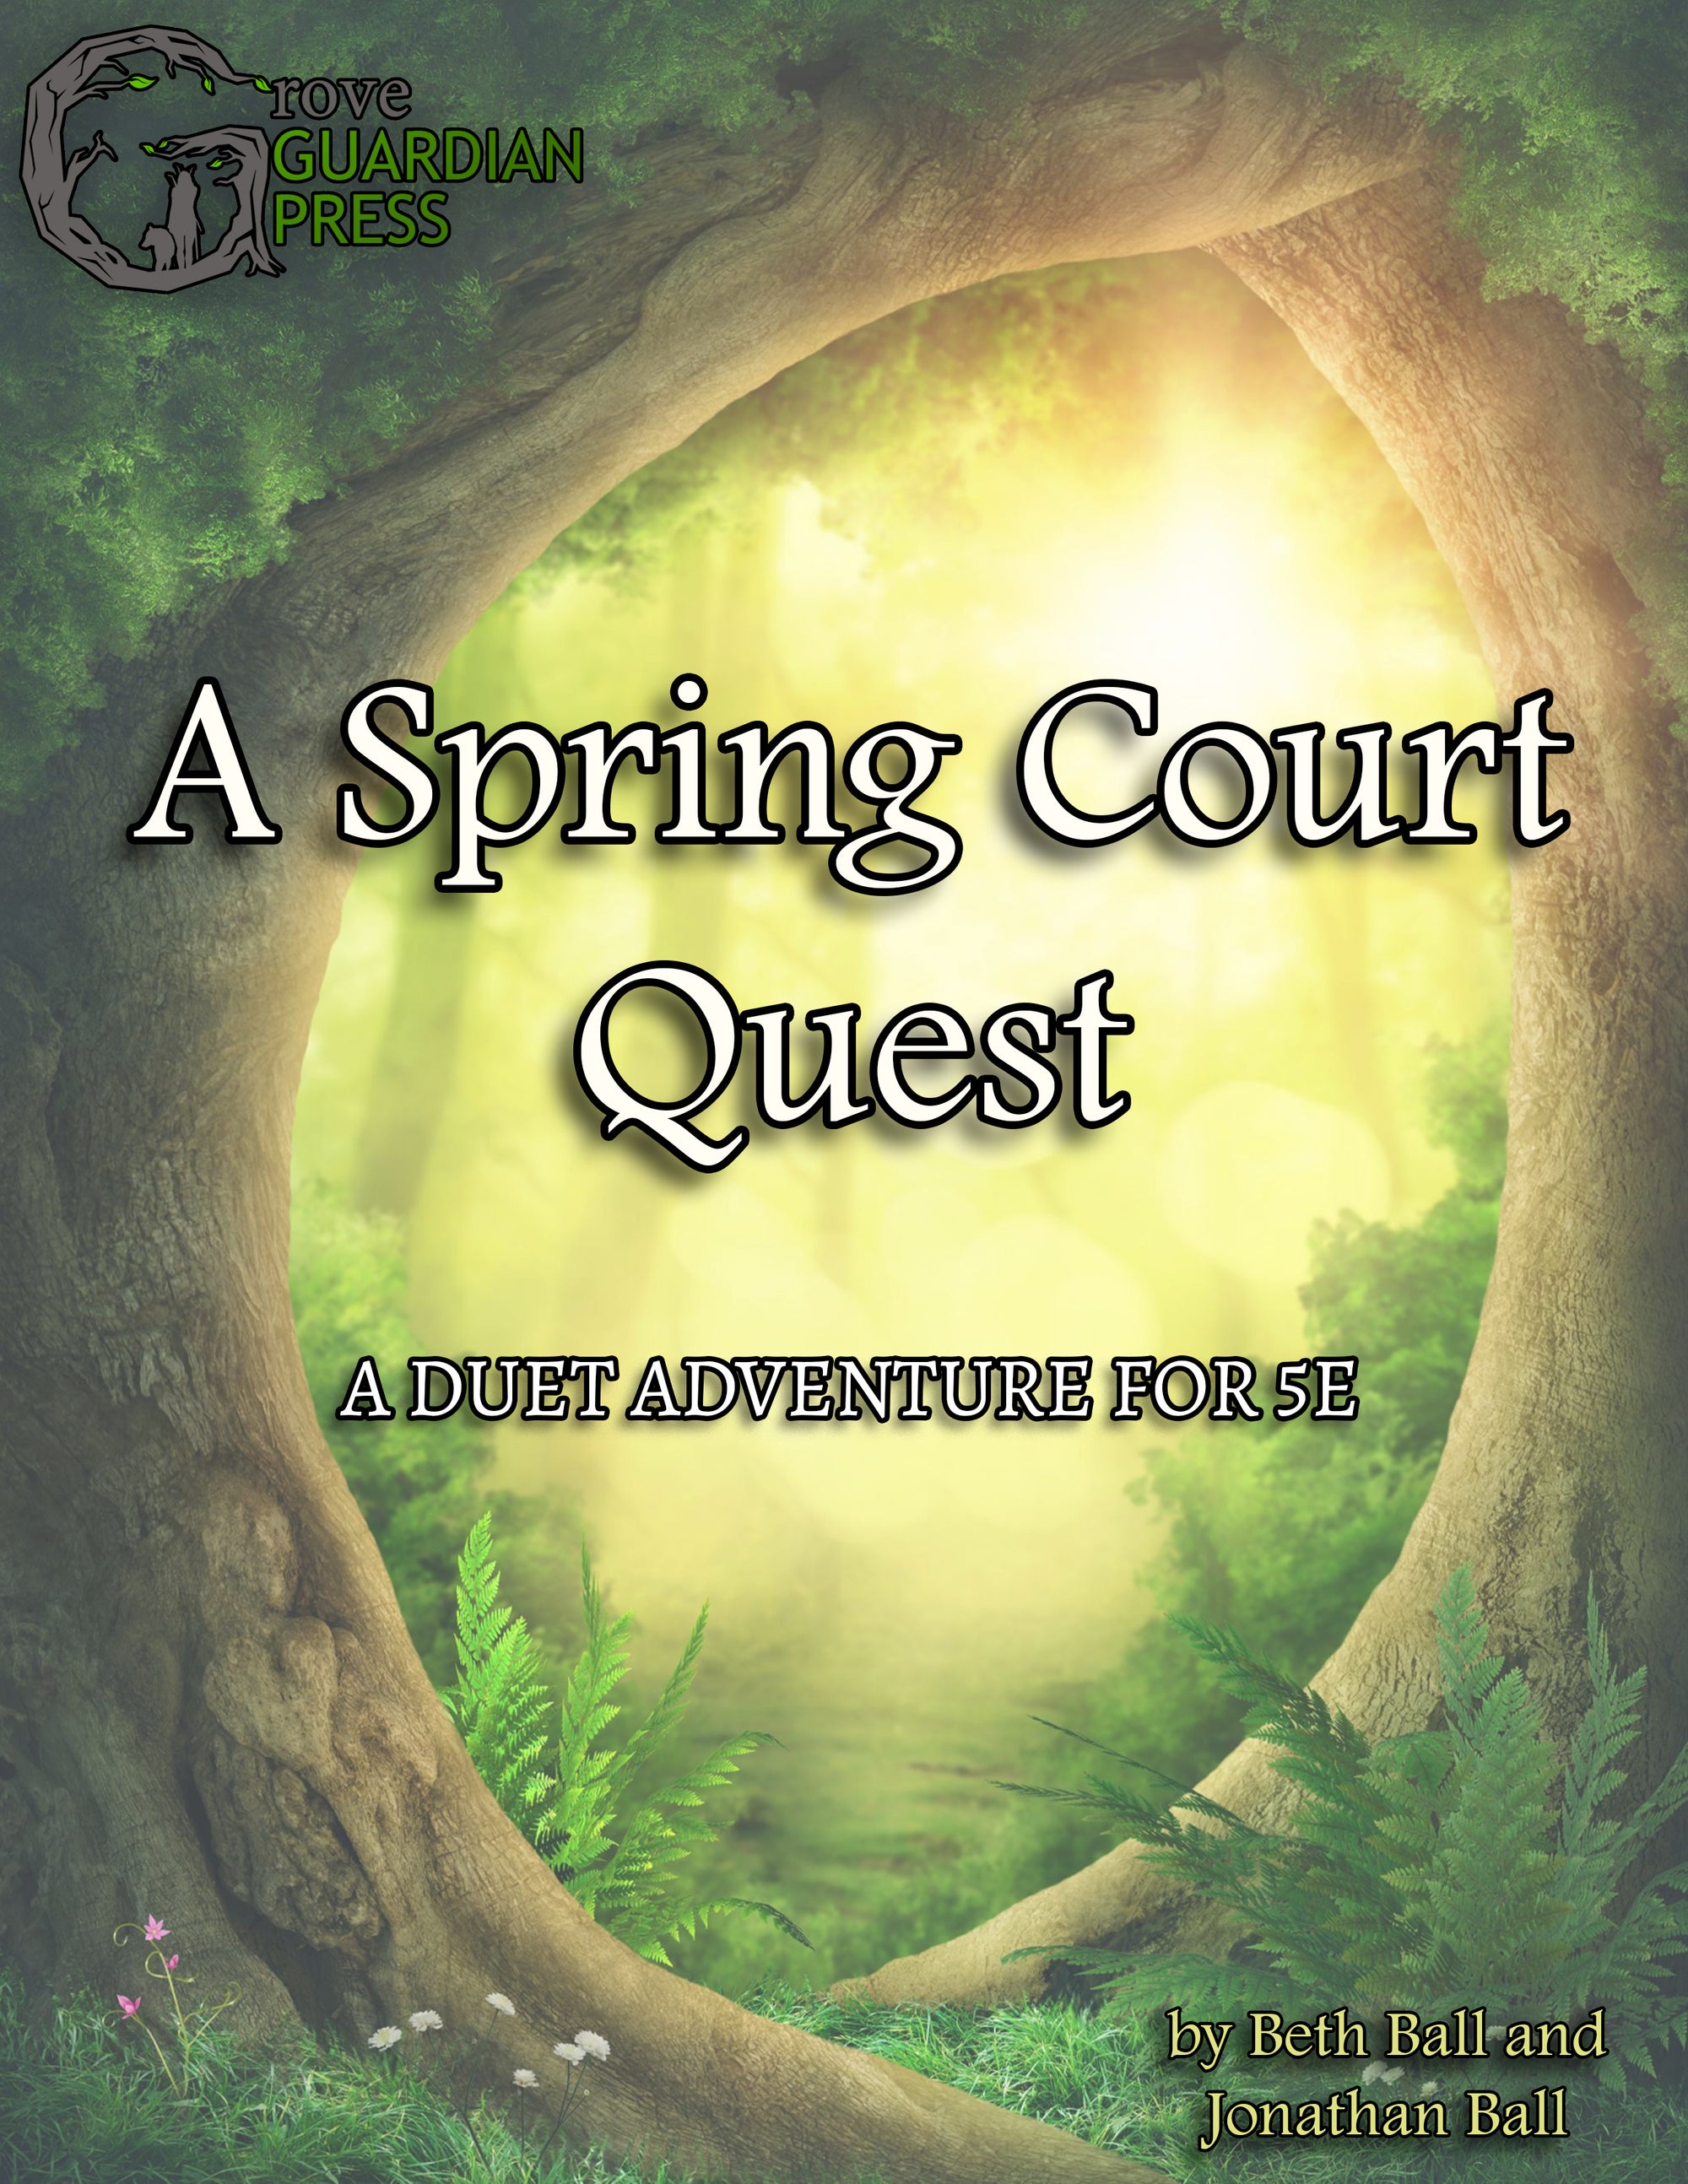 A Spring Court Quest—a duet 5e adventure